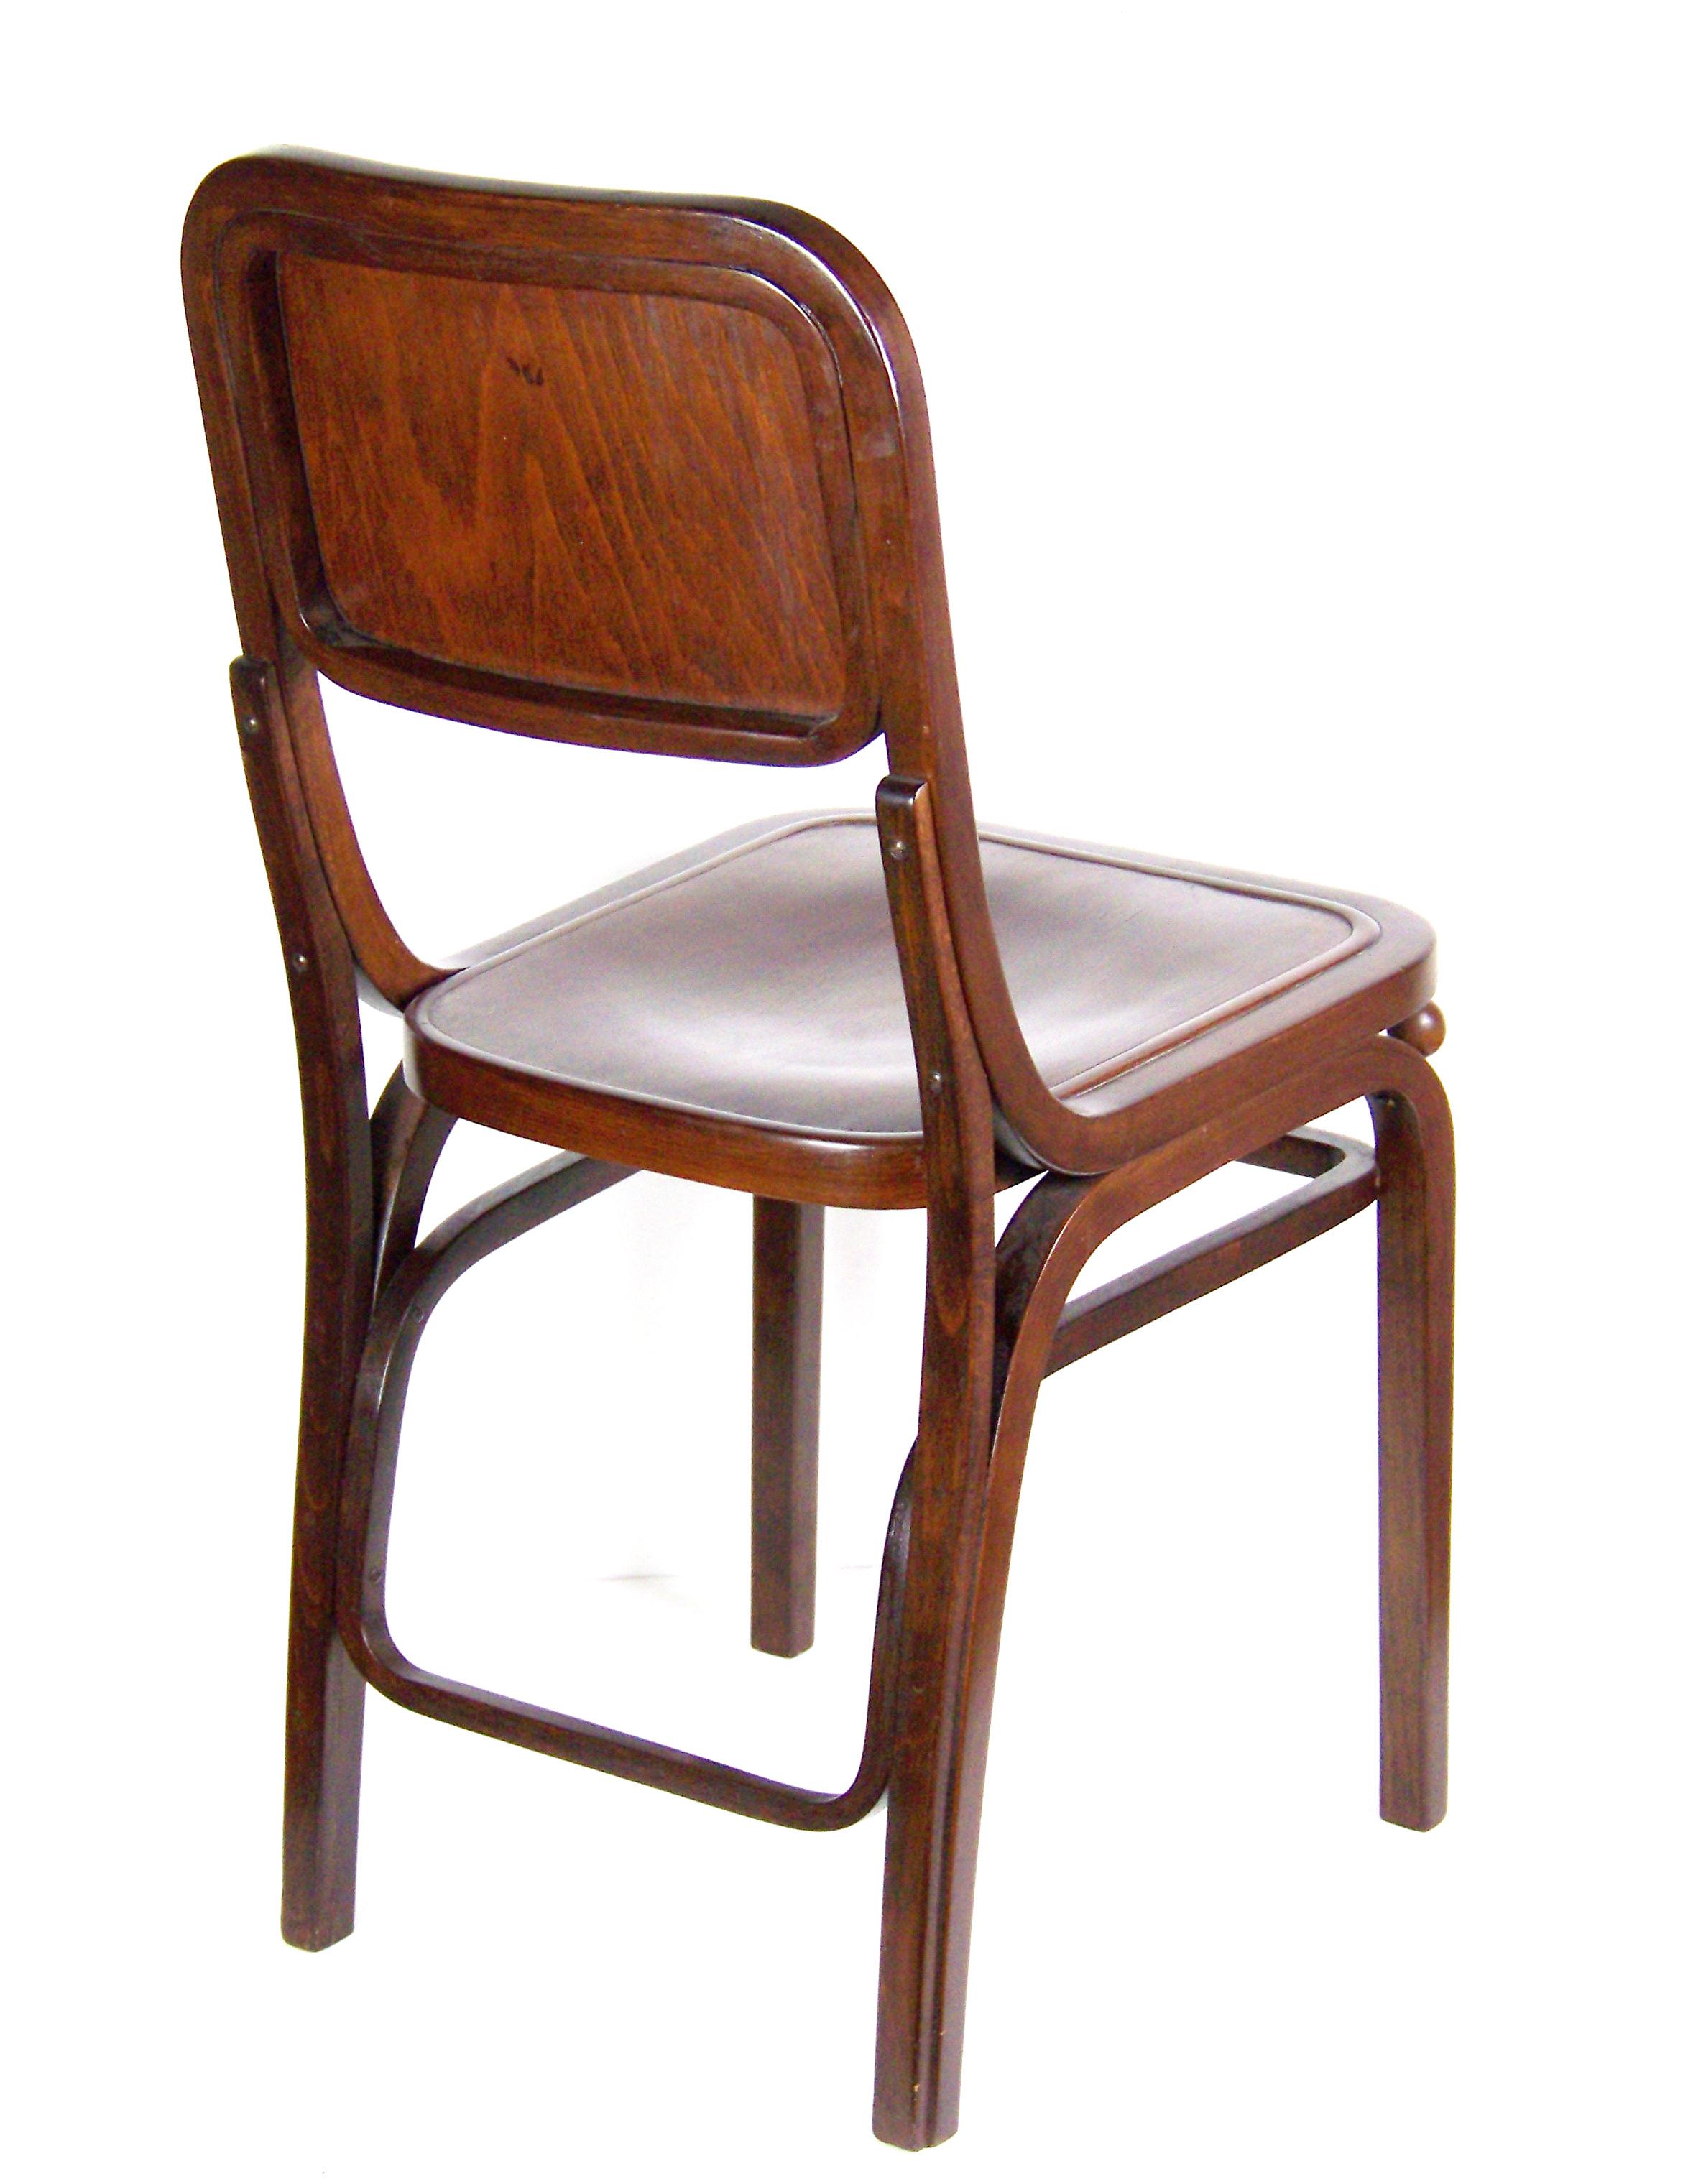 Äußerst seltener Stuhl Thonet Nr. 404. Wahrscheinlich für die Weinstube des Prager Stadthauses im Jahr 1910 entworfen, in leichter Abwandlung eines Stuhls, den Marcel Kammerer möglicherweise für die österreichische Ausstellung in London 1905